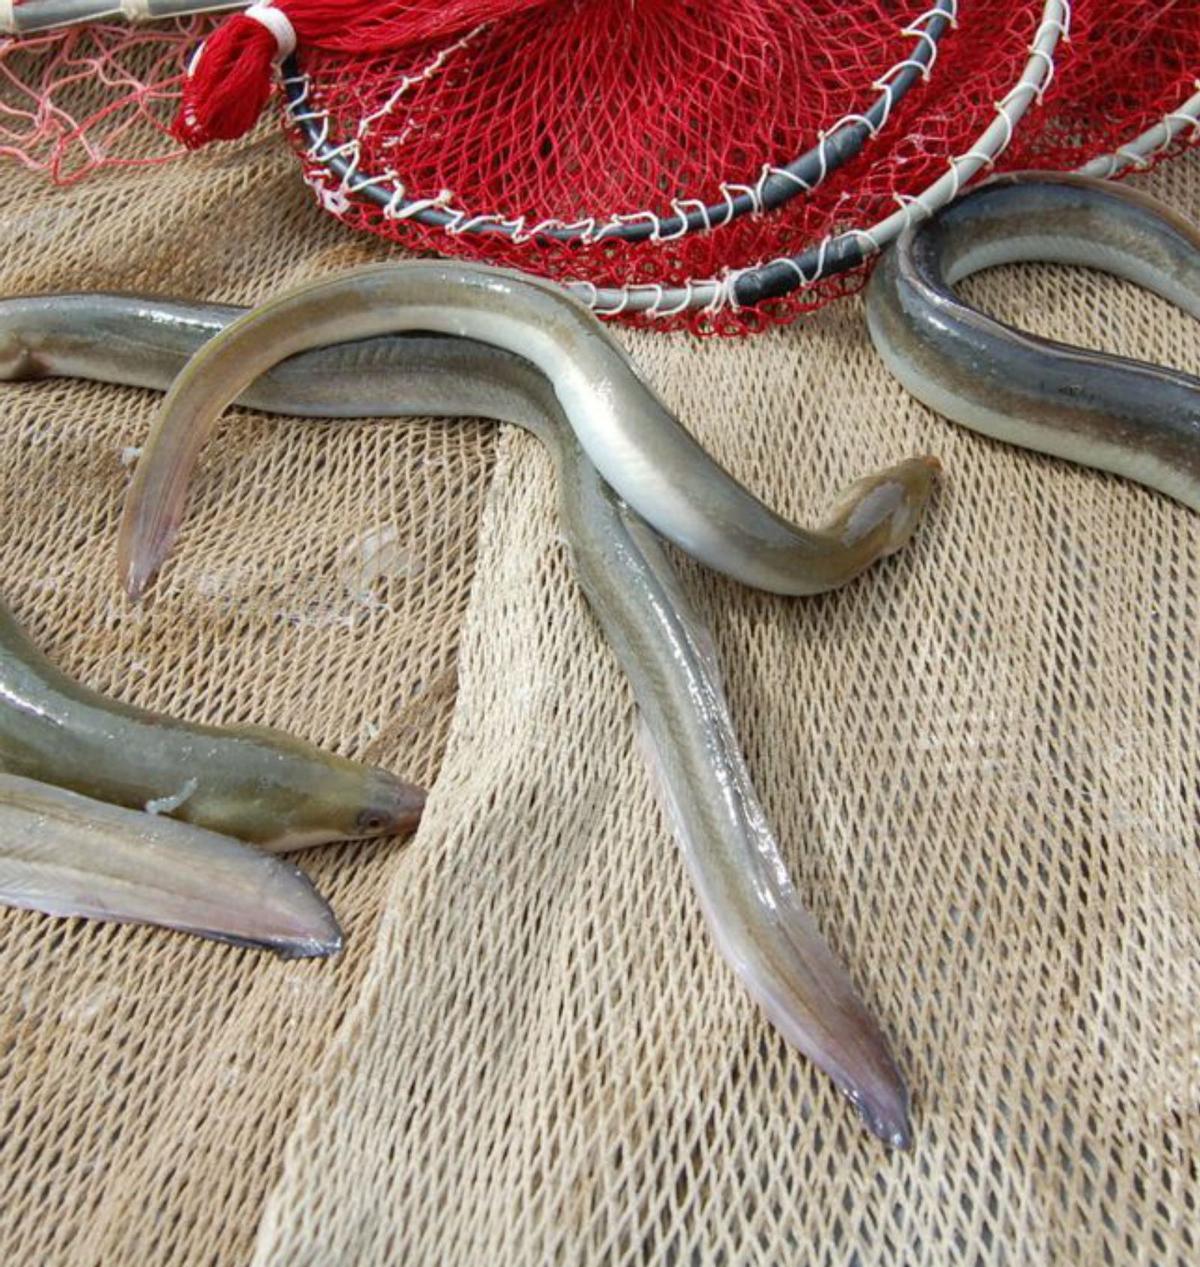 Alerta pel perill d’extinció de l’anguila